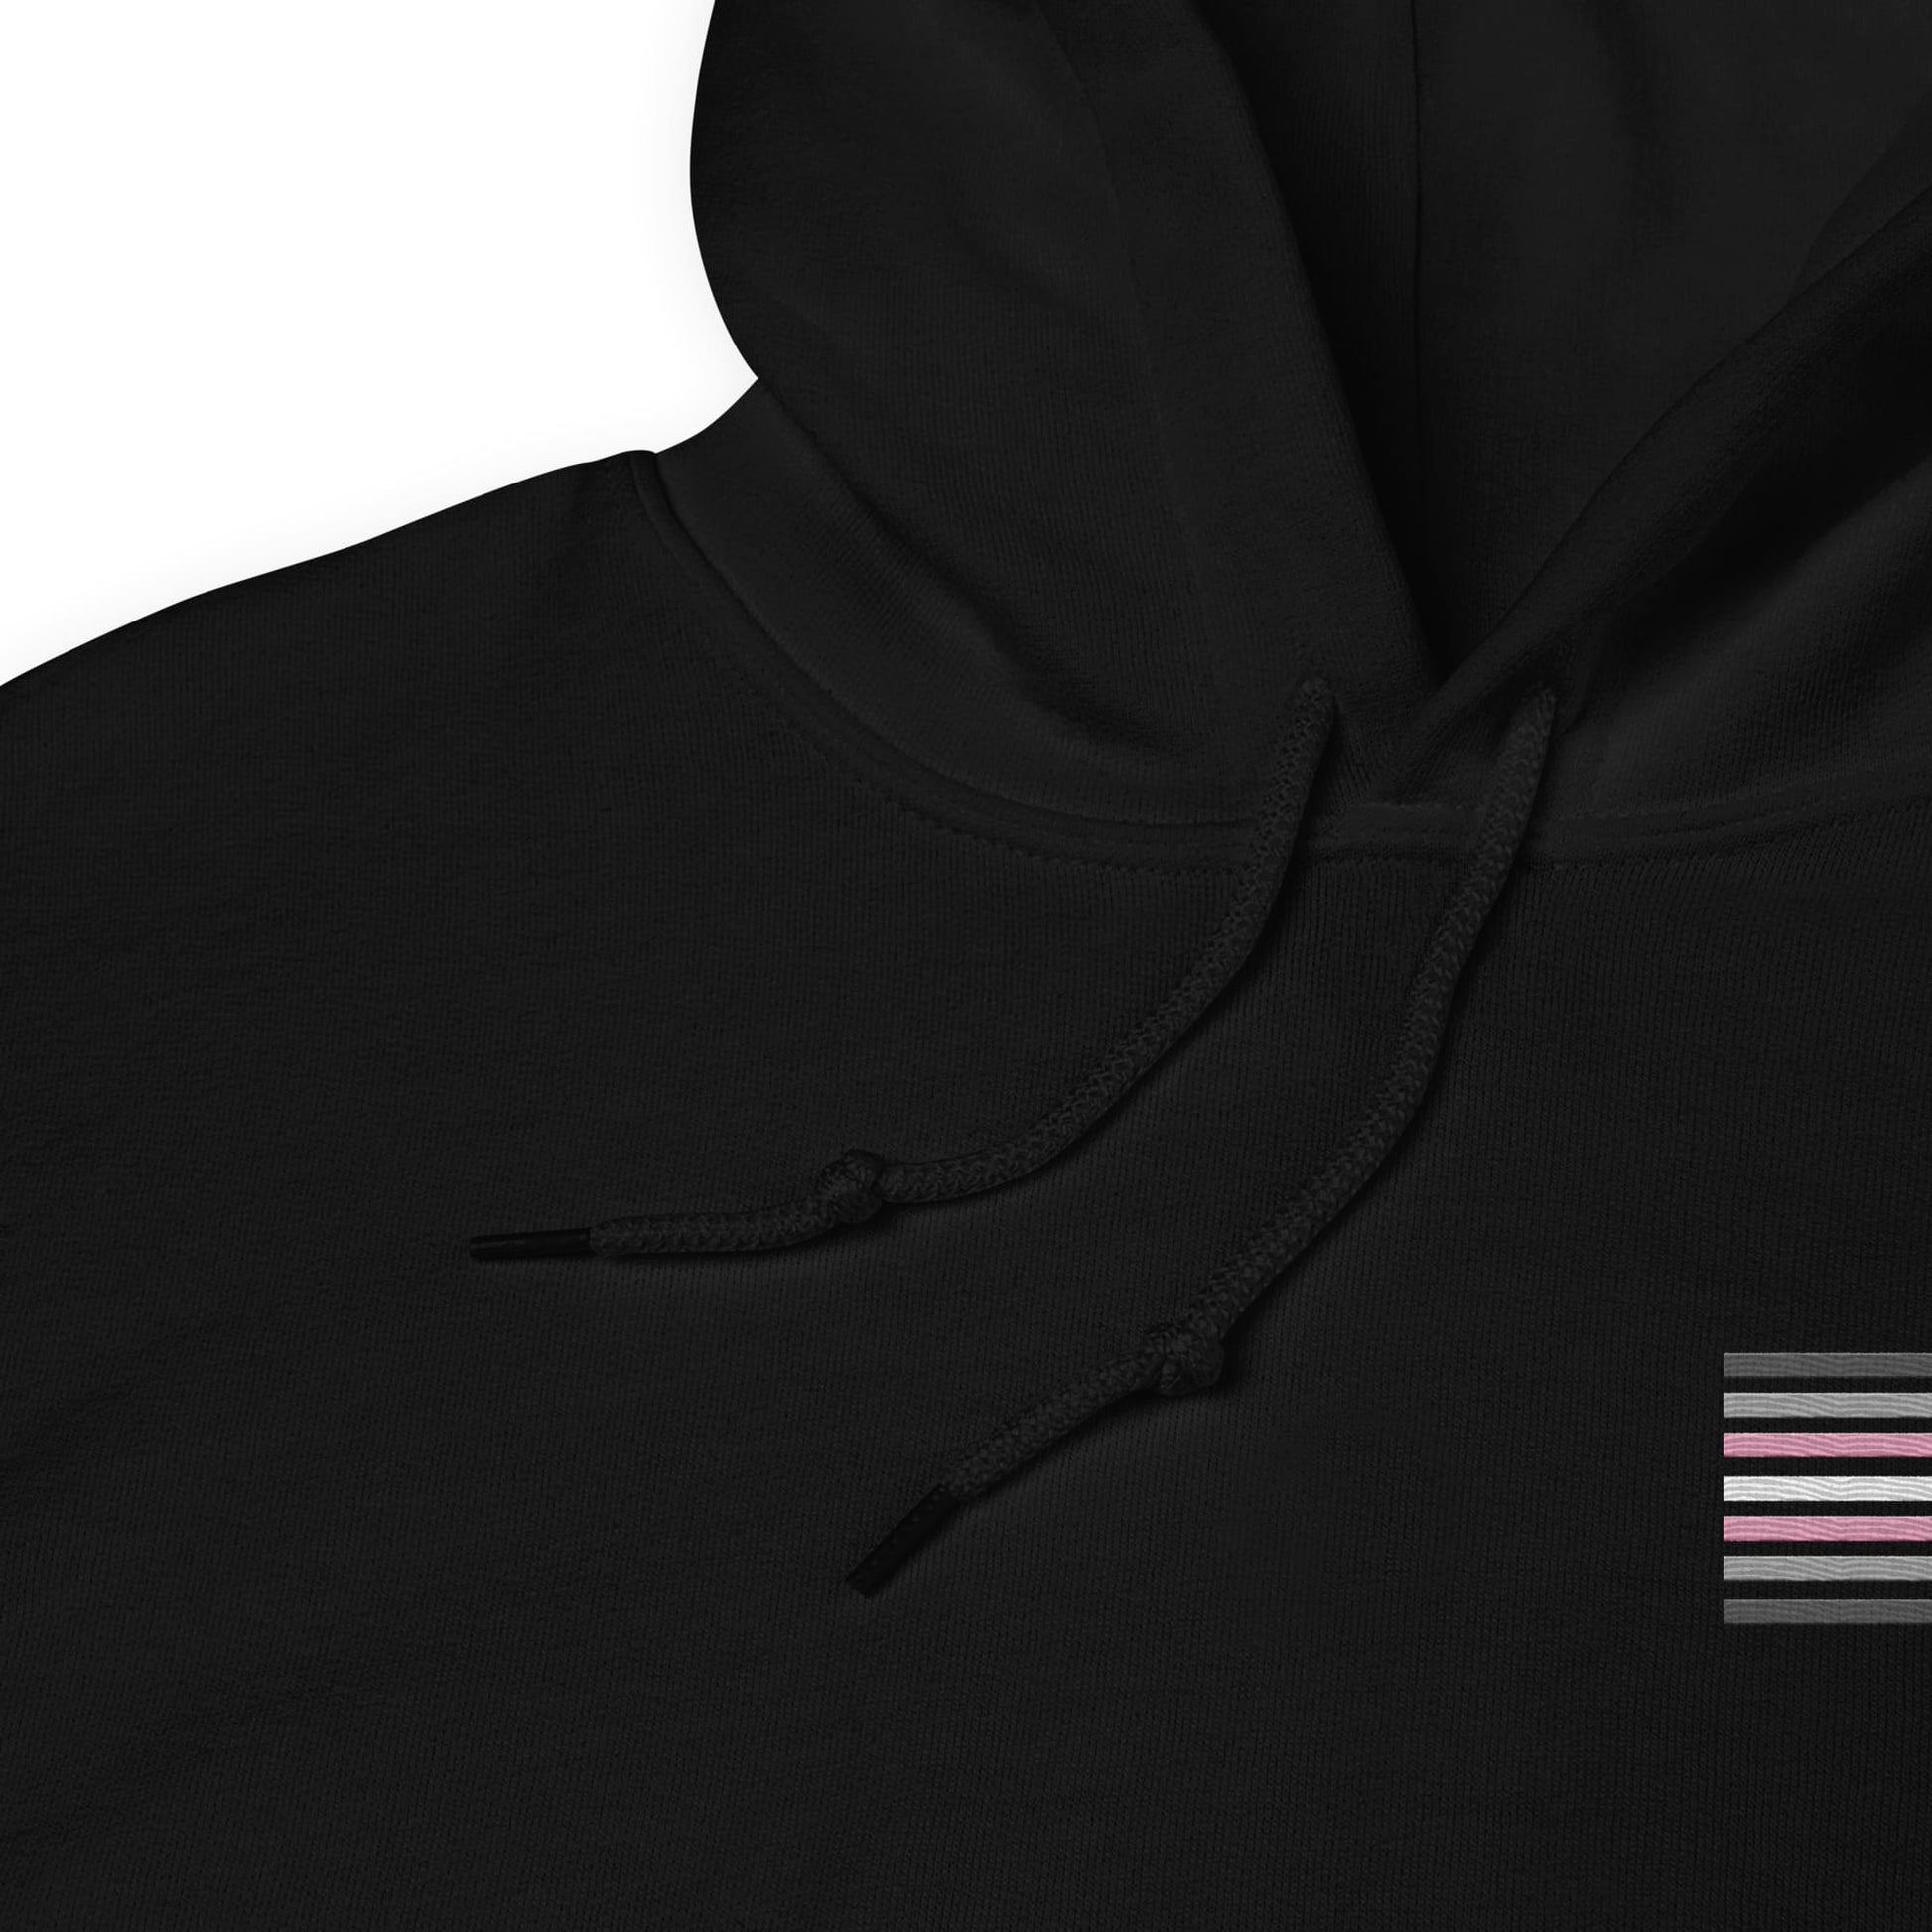 demigirl hoodie, subtle demigender pride flag embroidered pocket design hooded sweatshirt, strings